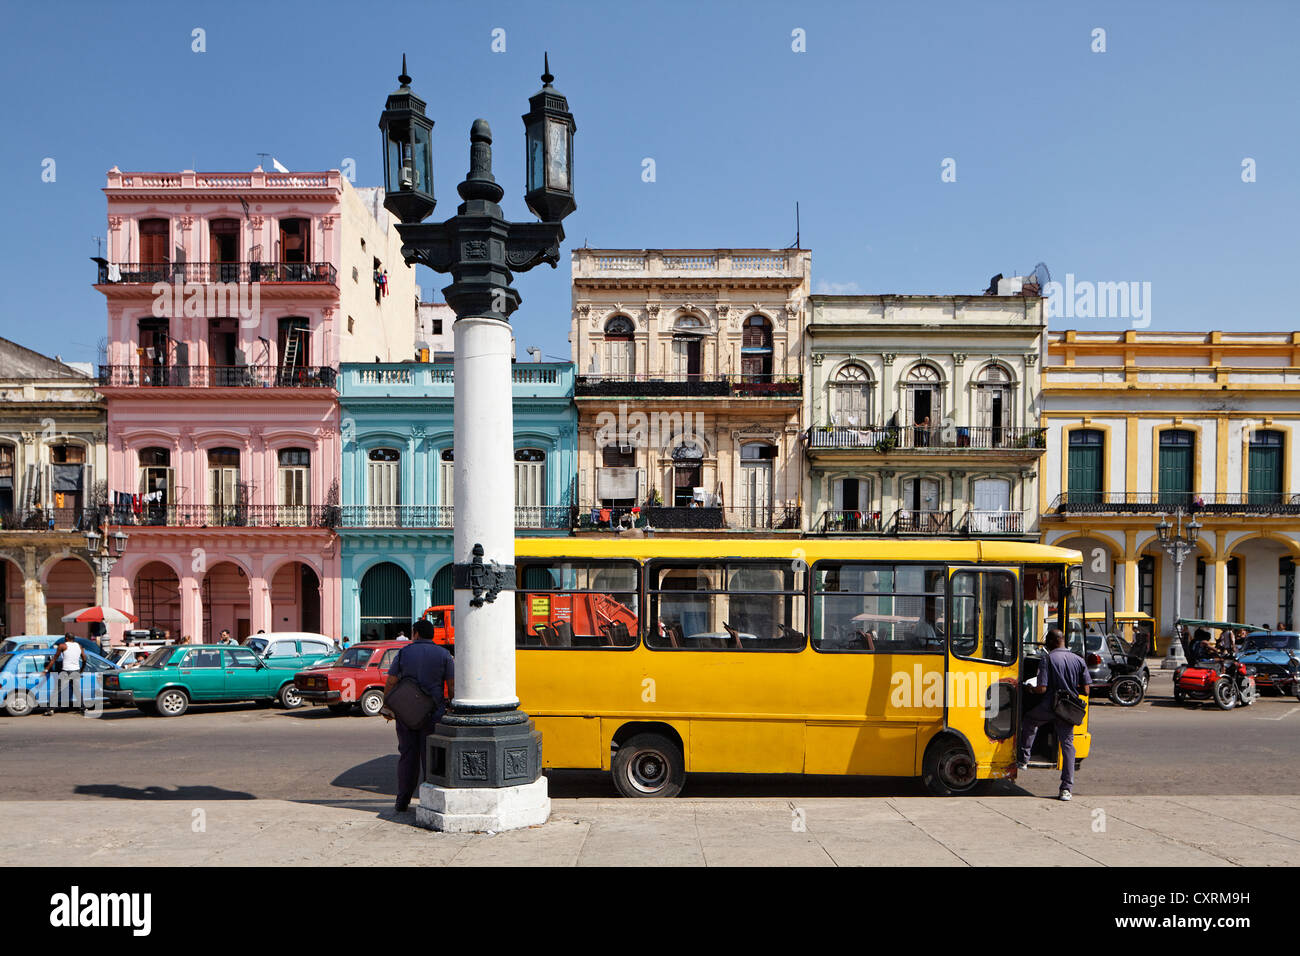 Straße mit Reihe von Häusern, Kandelaber Laterne und einem gelben Bus, Villa San Cristobal De La Habana, Altstadt, La Habana, Havana Stockfoto